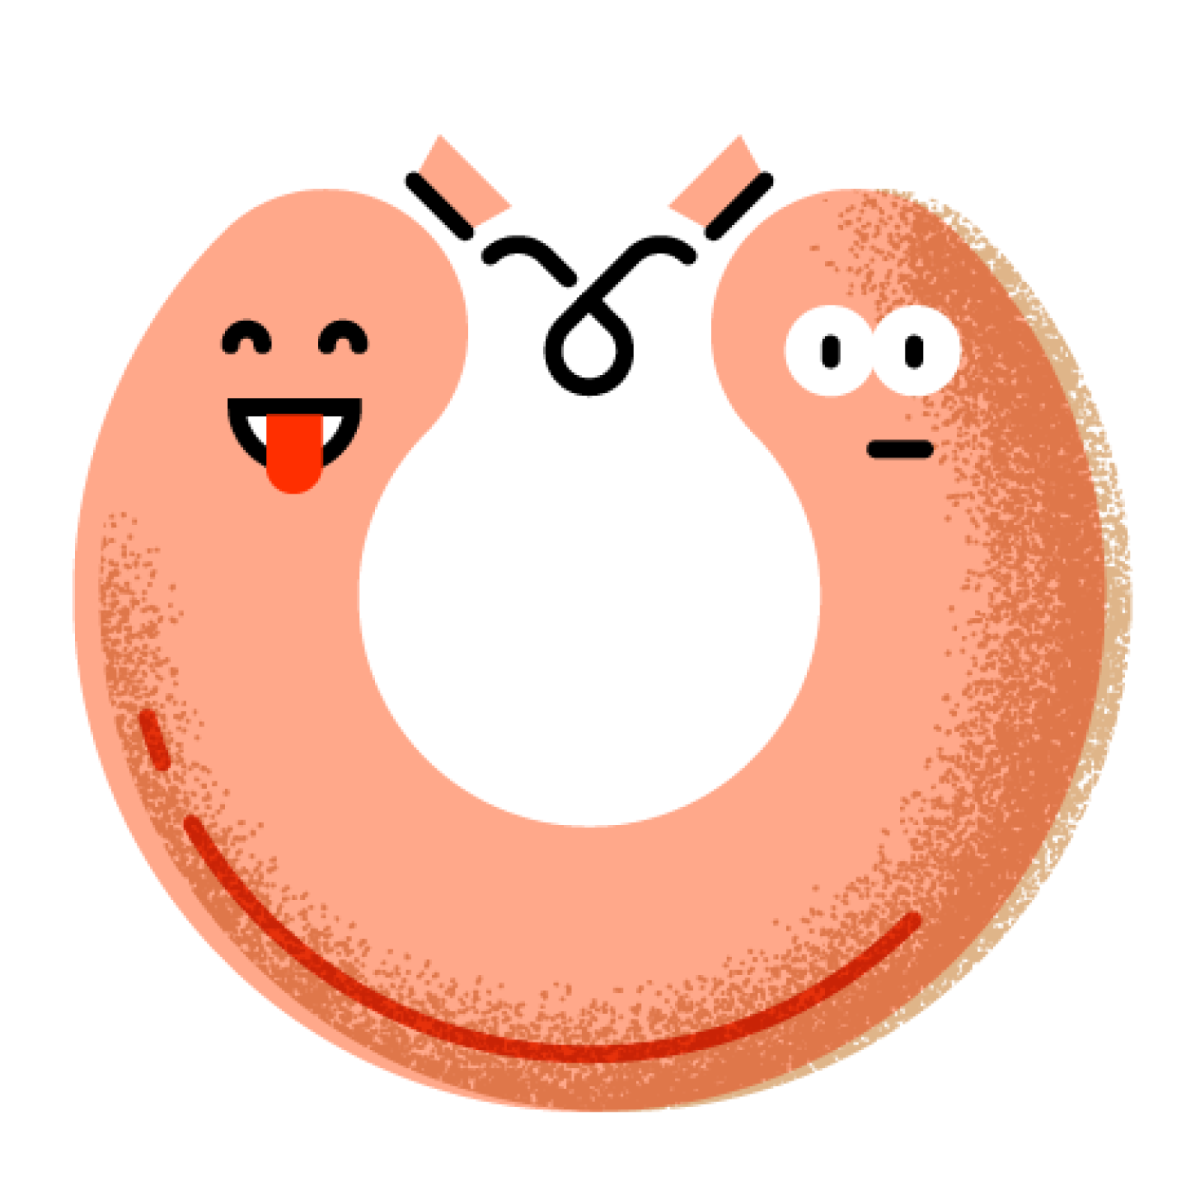 Eine Lyoner-Kringelwurst als Emoji.